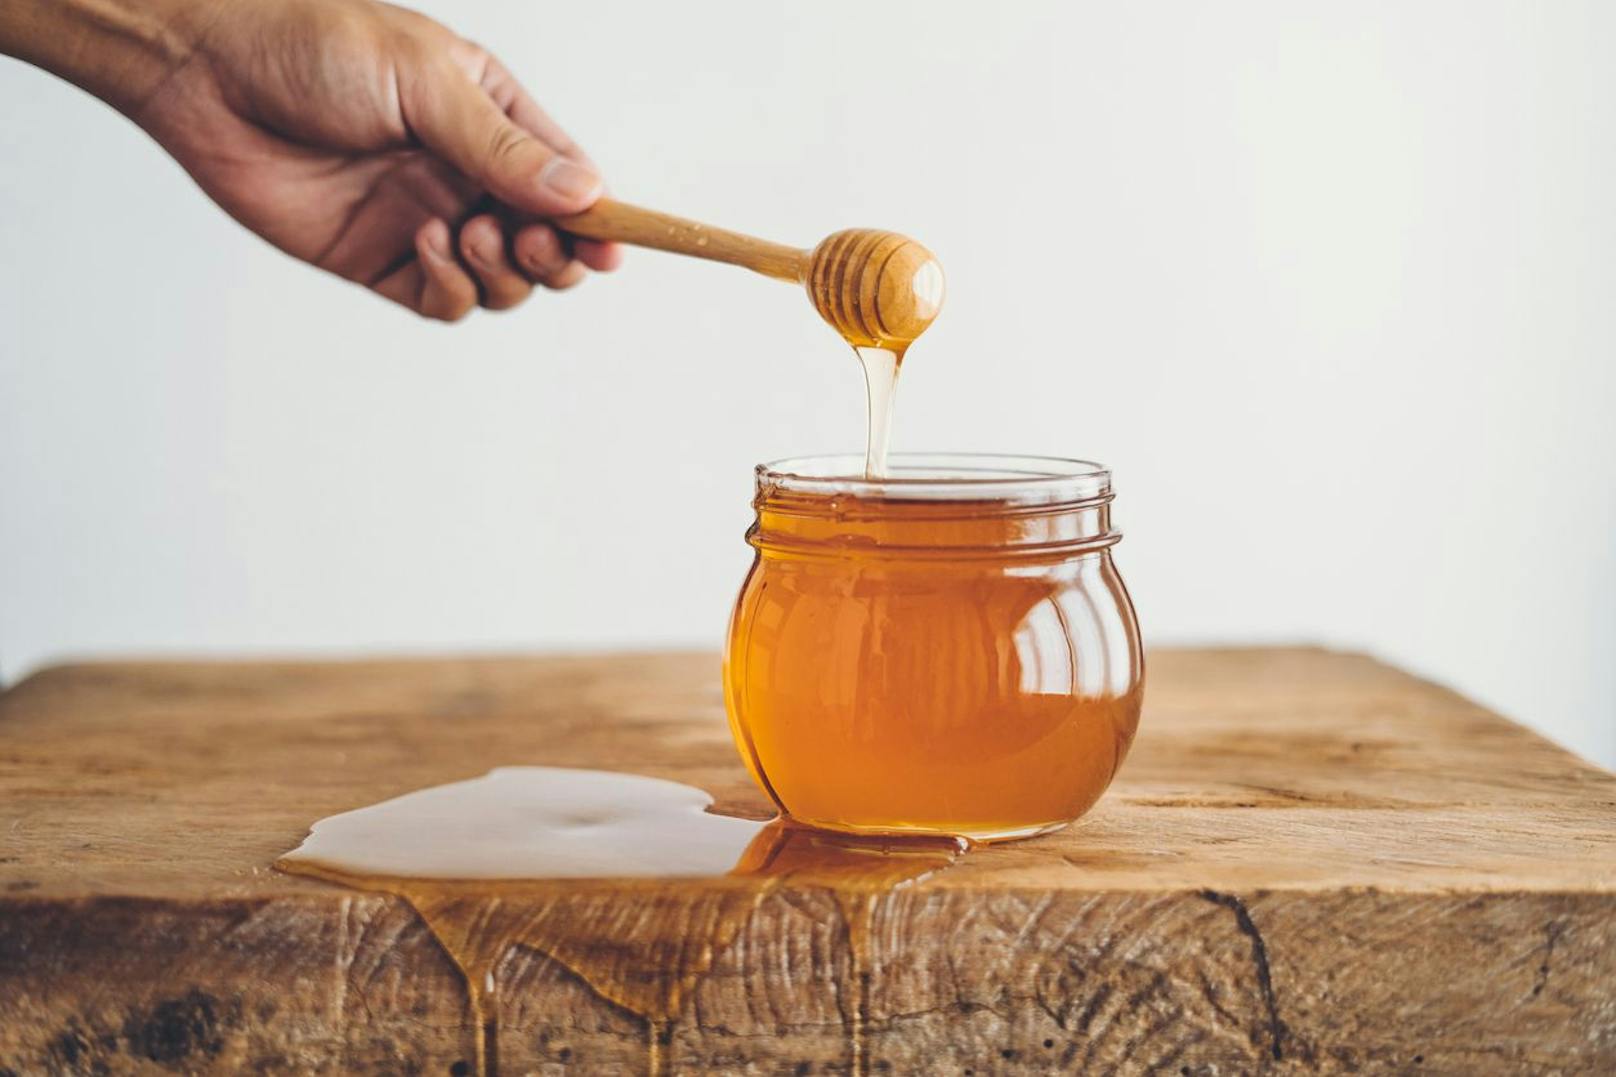 Honig schlemmt man gerne bei einem empfindlichem Hals, denn immerhin tötet die süße Delikatesse Bakterien ab.